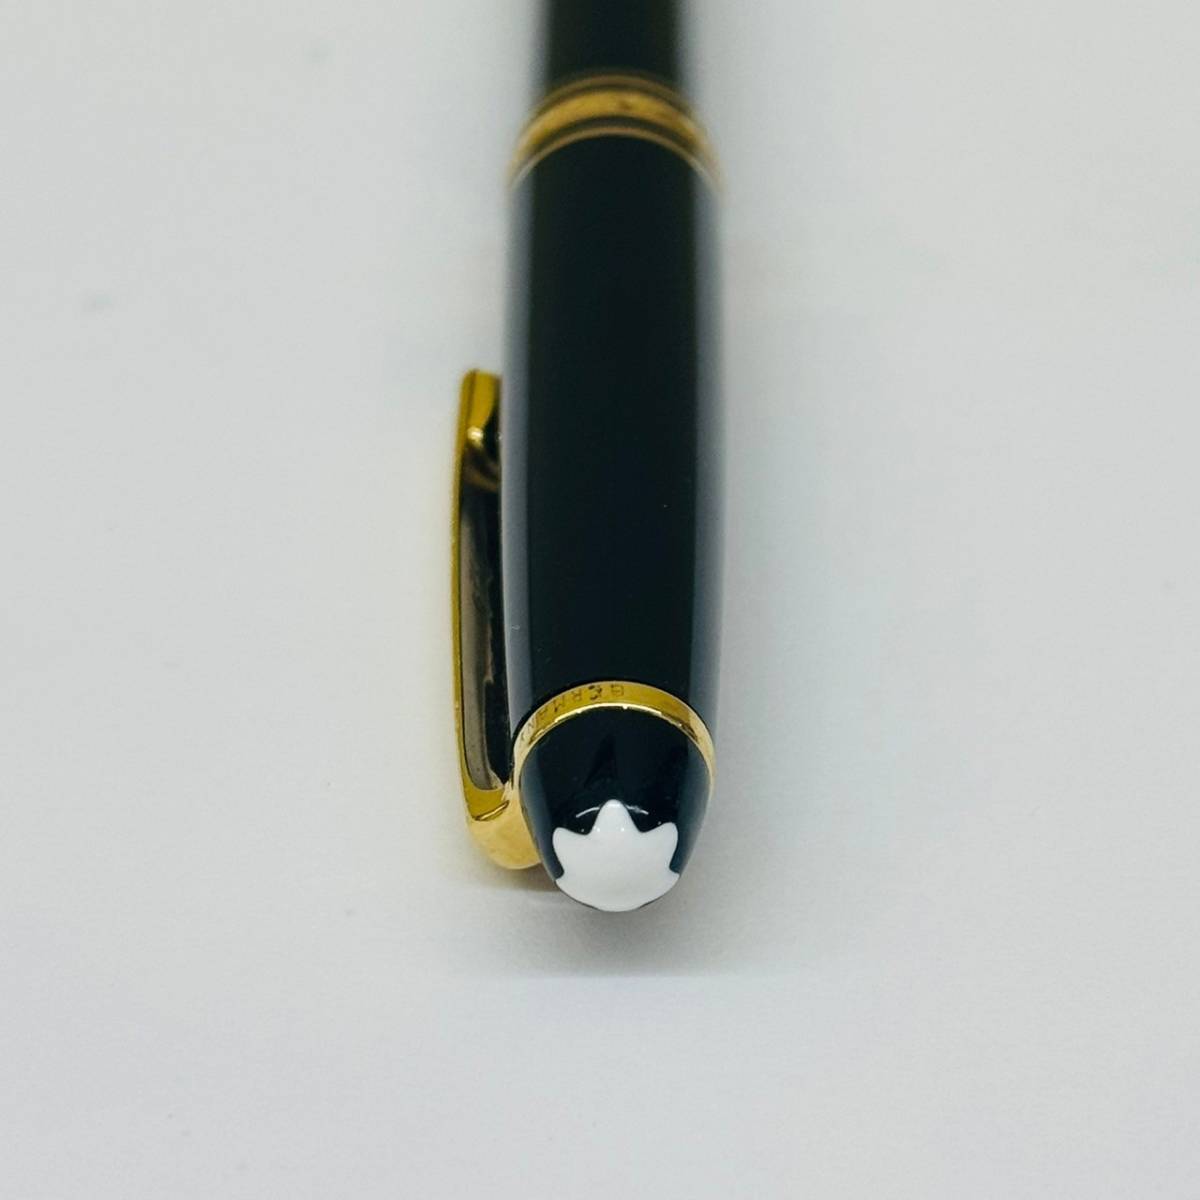 【IK-25762】 MONTBLANC マイスターシュテック シャープペンシル モンブラン シャーペン 筆記具 黒 金 BLACK GOLD ブランド 中古_画像3